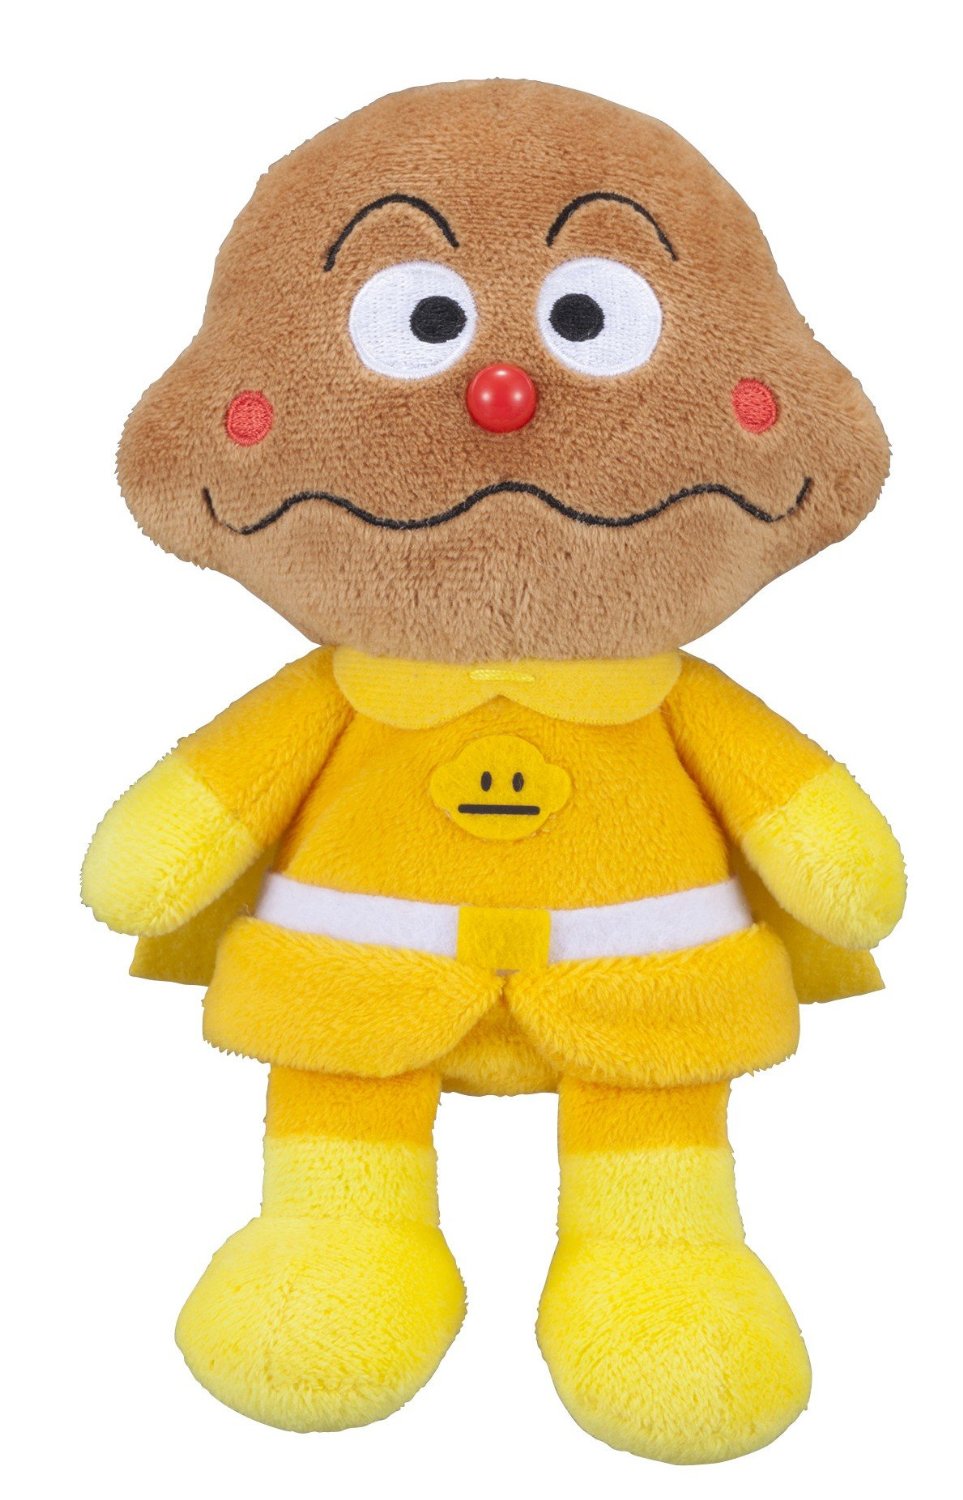 【真愛日本 】15072300020	經典絨毛娃S-咖哩麵包超人Anpanman 麵包超人娃娃 擺飾預購商品